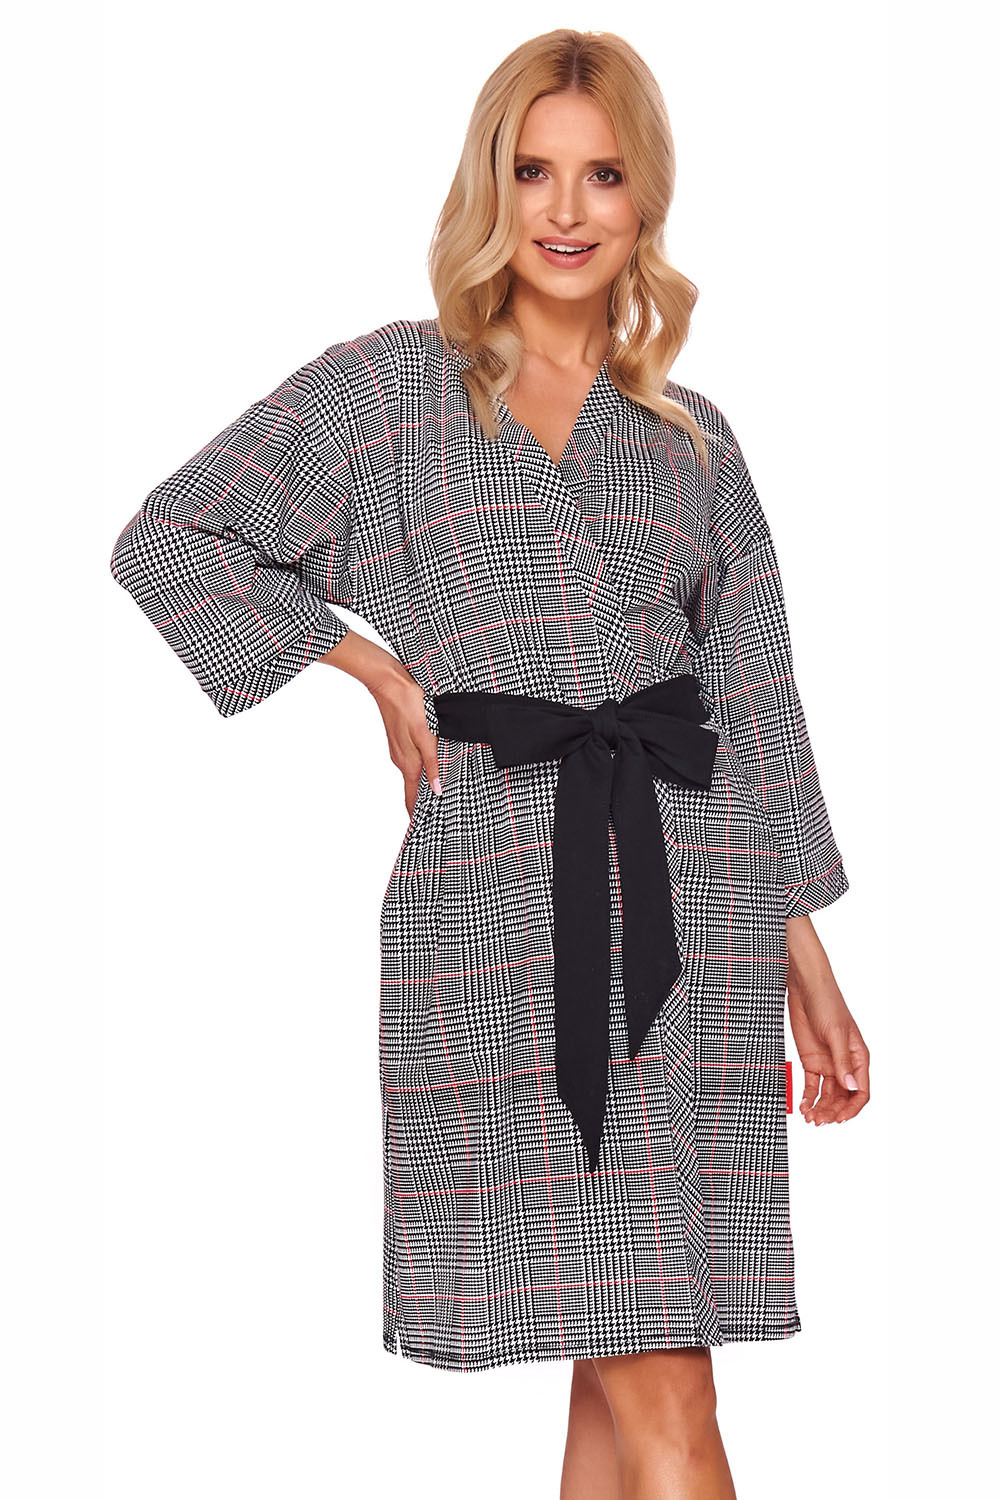 Элегантный халат-кимоно свободного силуэта выполнен из хлопкового полотна высшего качества фото